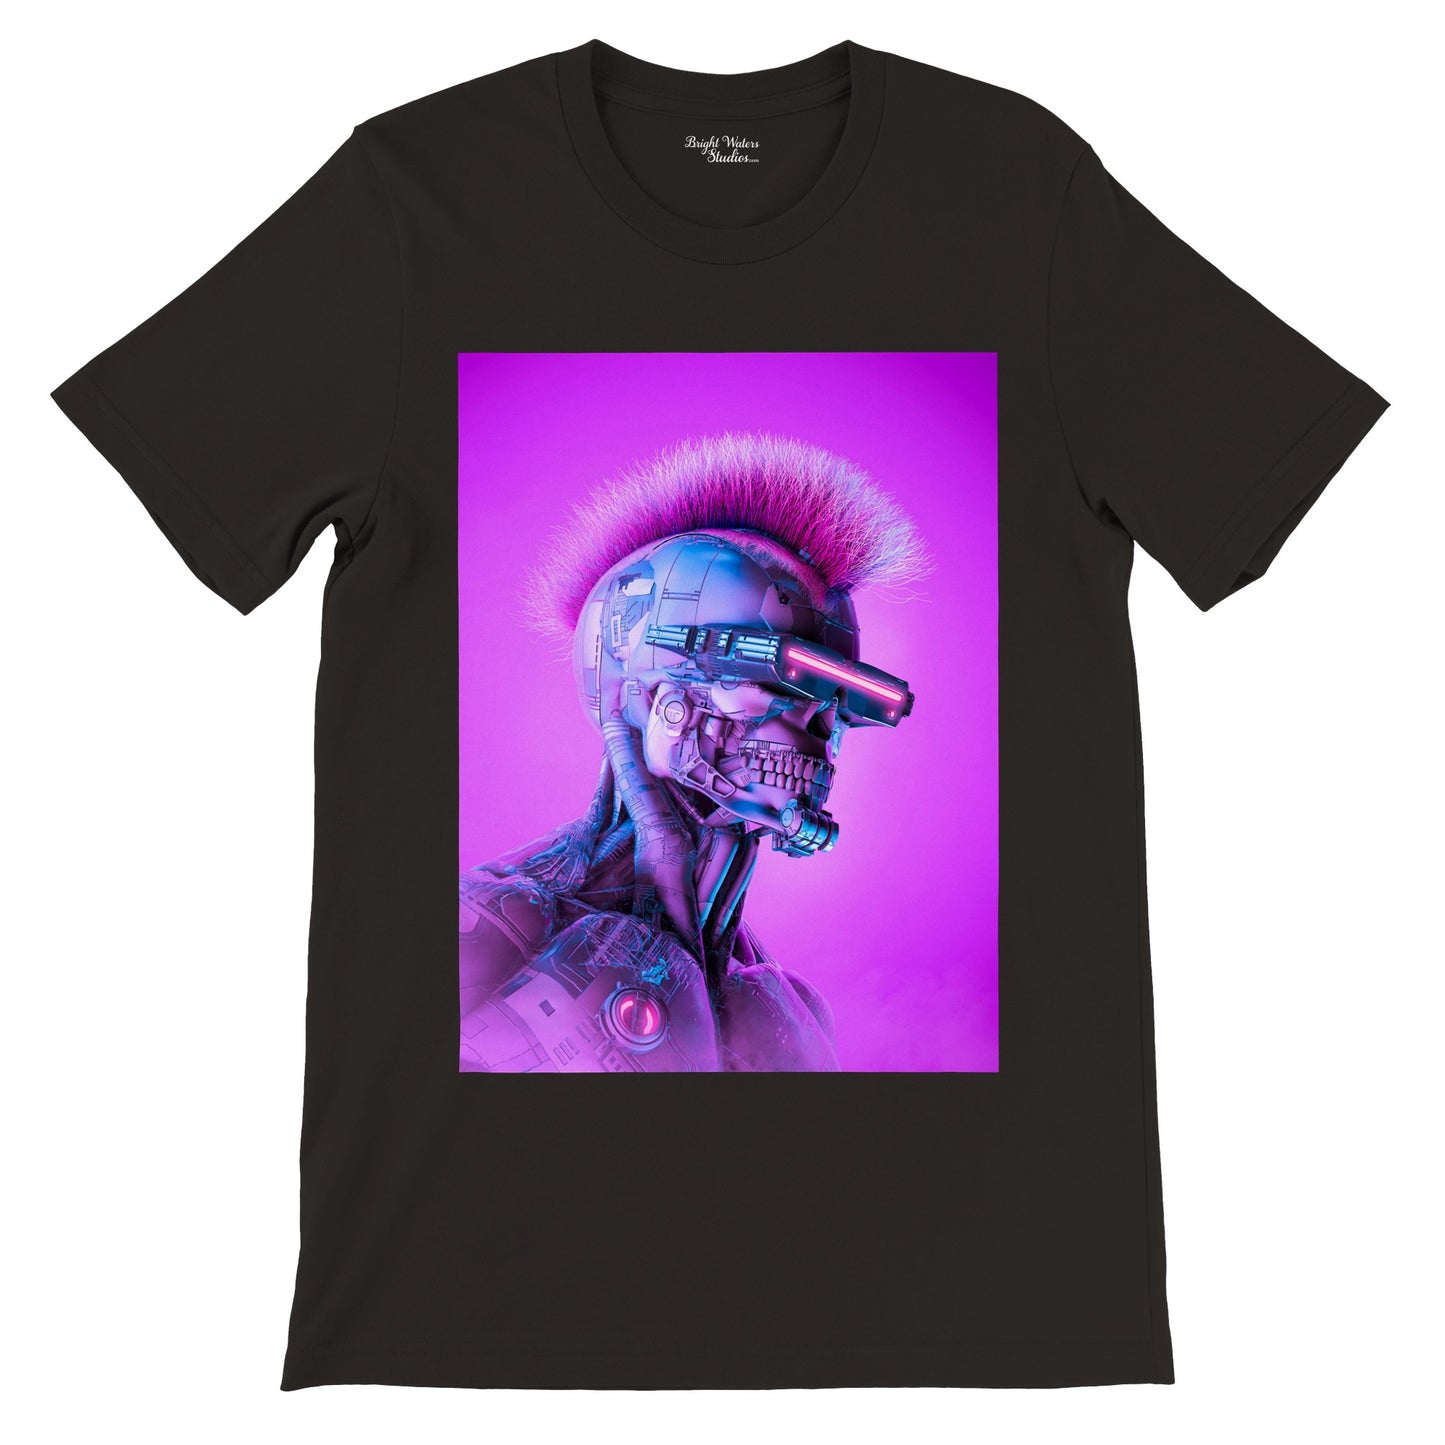 Cyberpunk skull robot T-shirt